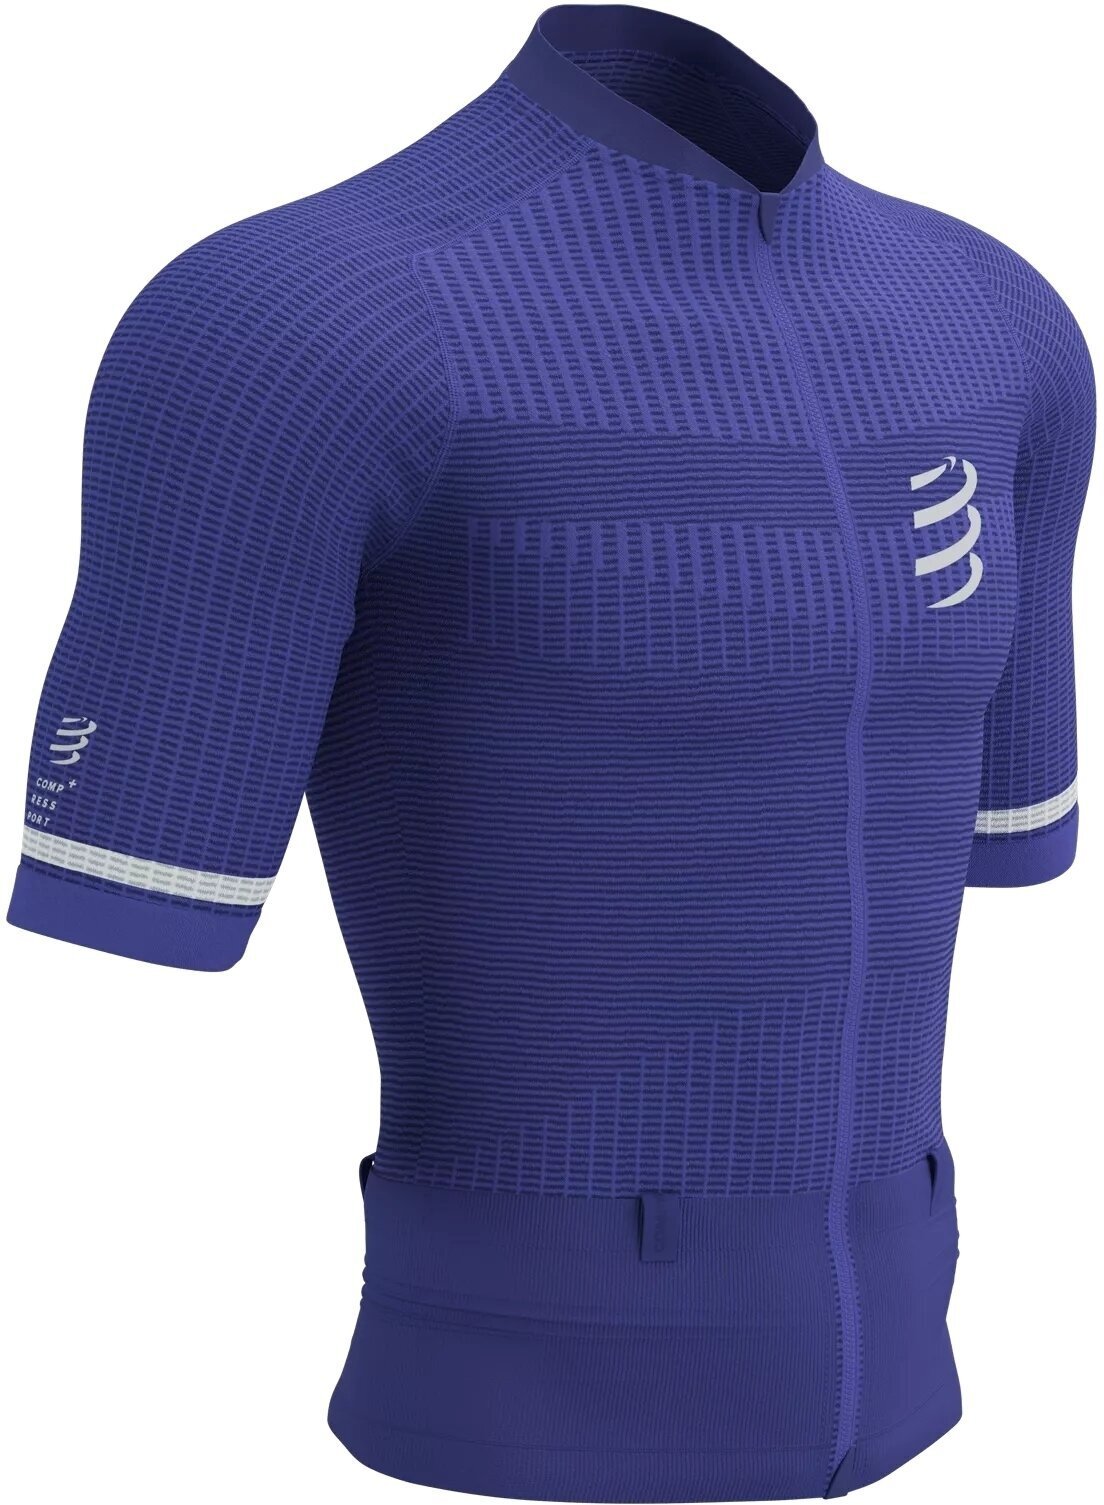 Běžecké tričko s krátkým rukávem
 Compressport Trail Postural SS Top M Dazzling Blue/White S Běžecké tričko s krátkým rukávem